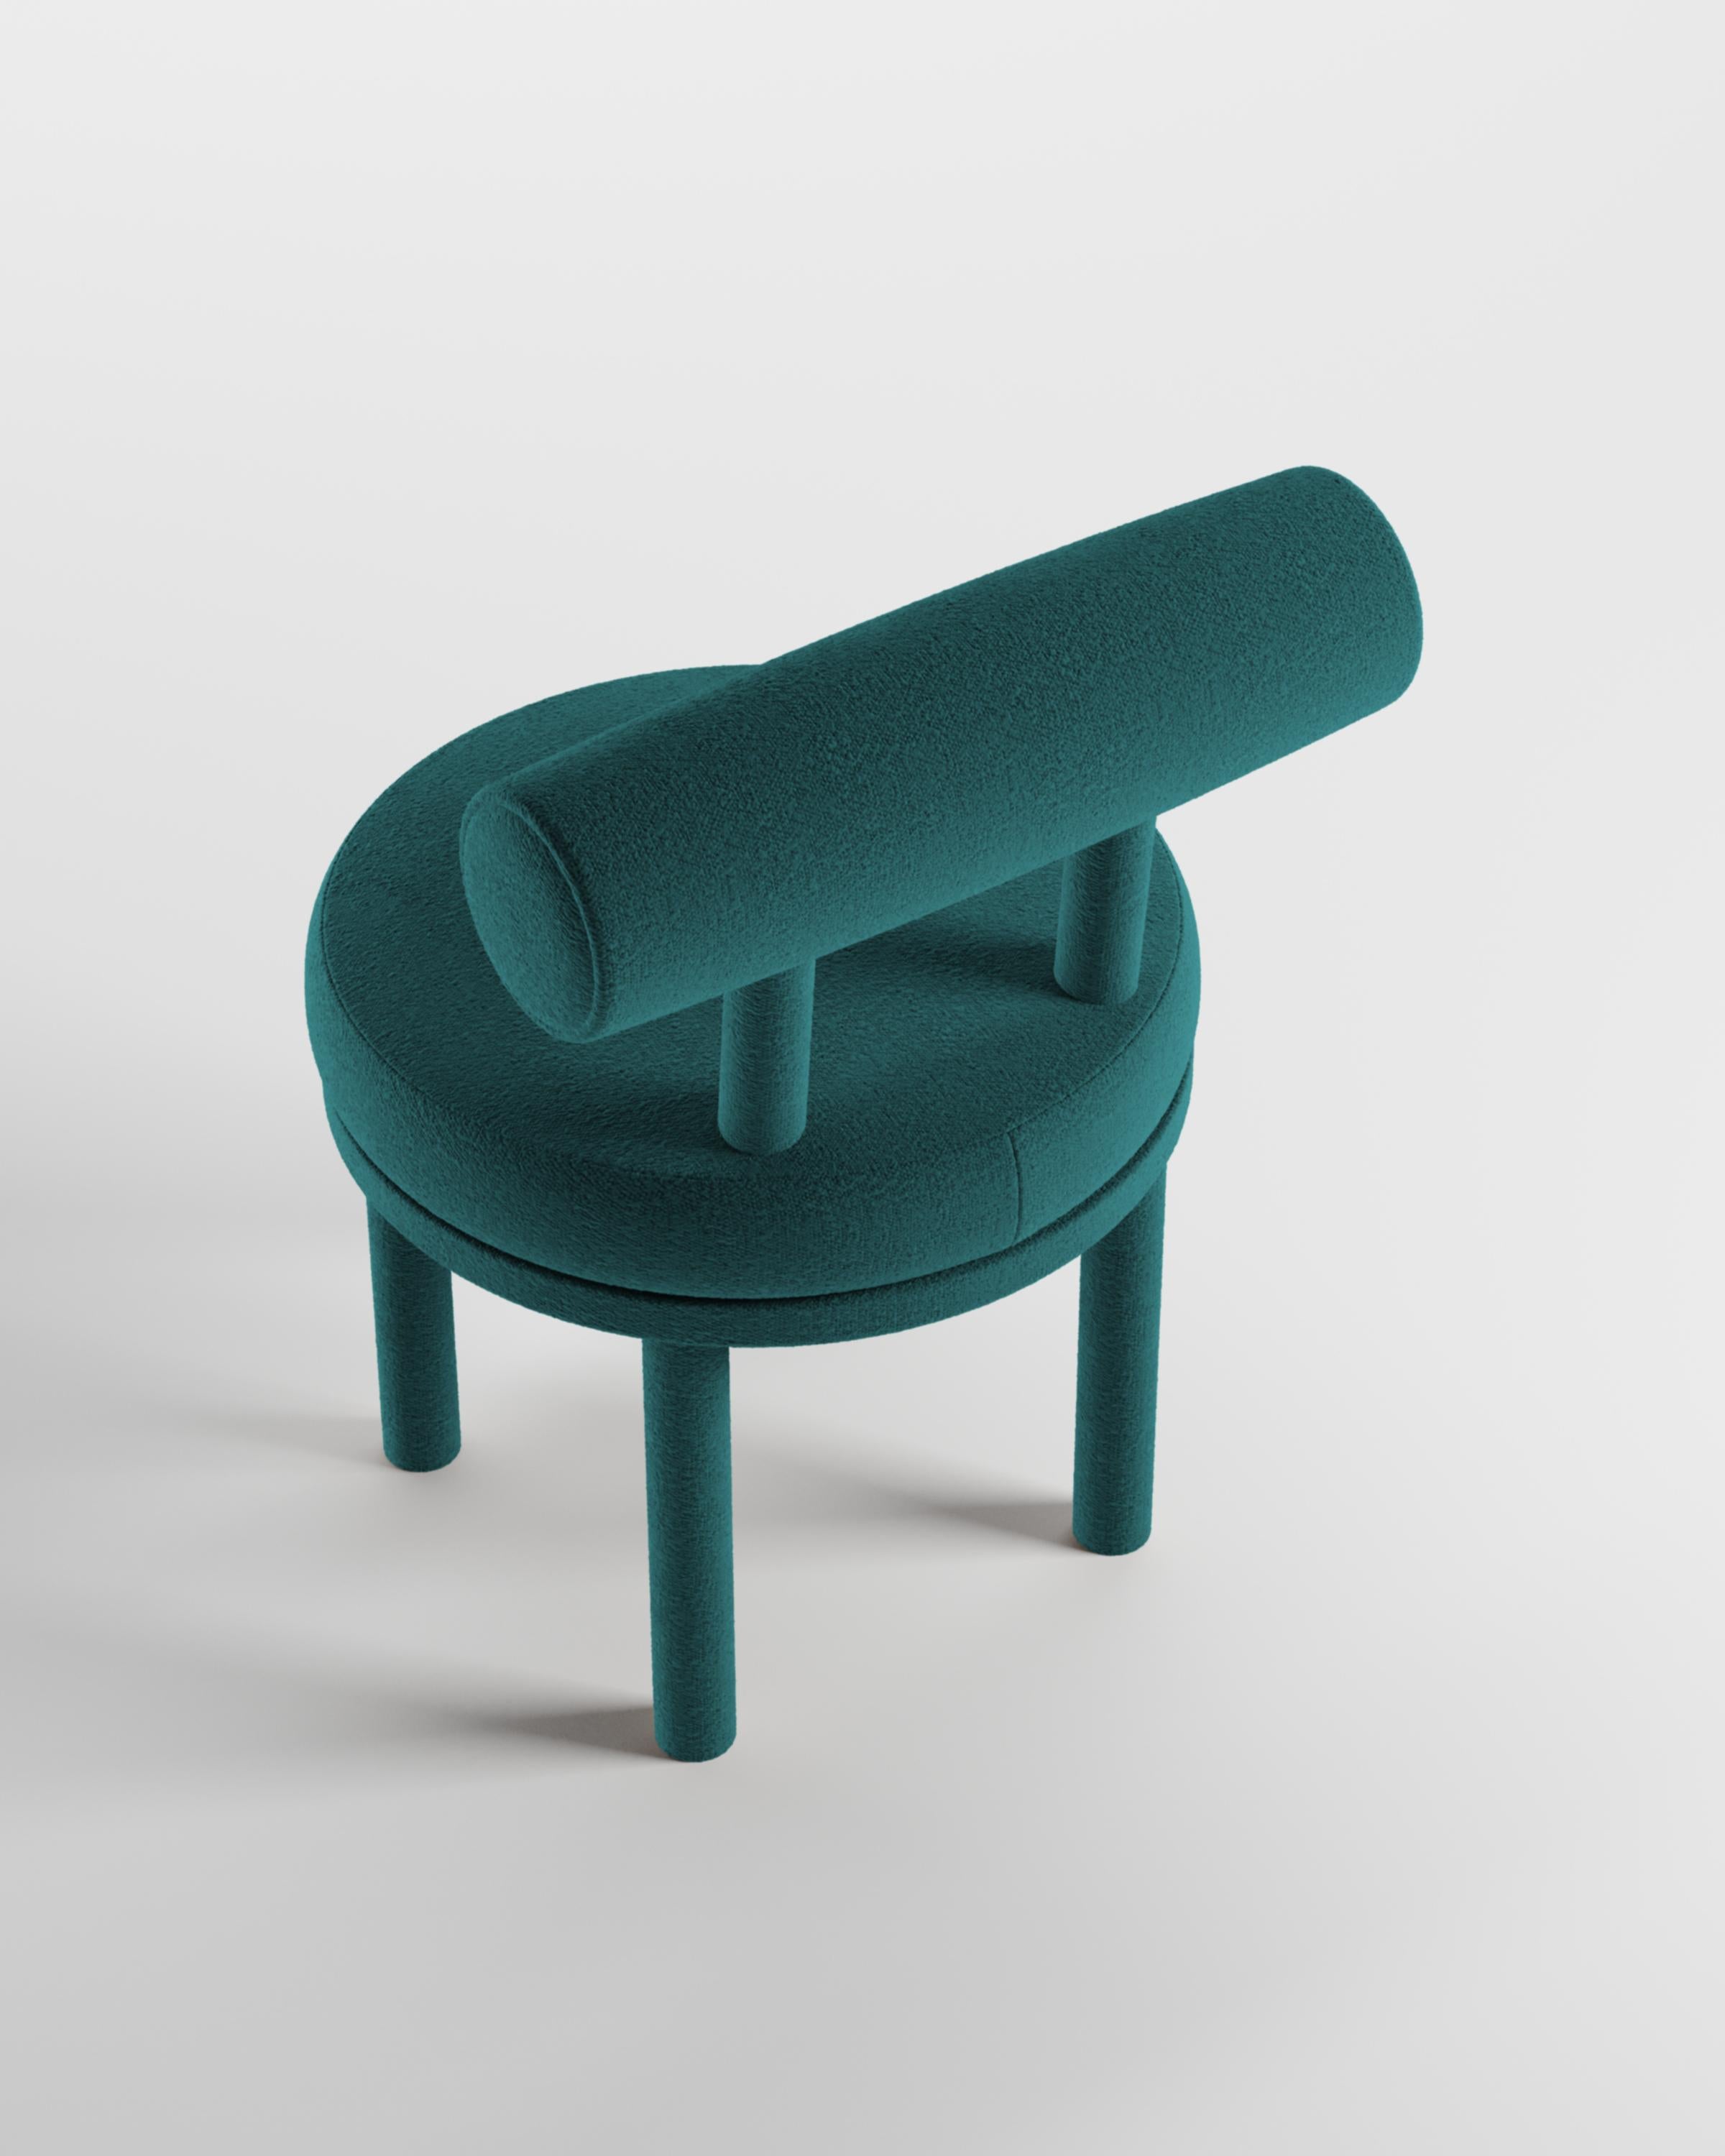 Ein Stuhl, der sowohl moderne als auch klassische Designansätze miteinander verbindet.
Der strapazierfähige und solide Stuhl ist so konzipiert, dass er sich an den Körper anschmiegt und verfügt über eine Korpusstruktur aus Massivholz.

Struktur aus